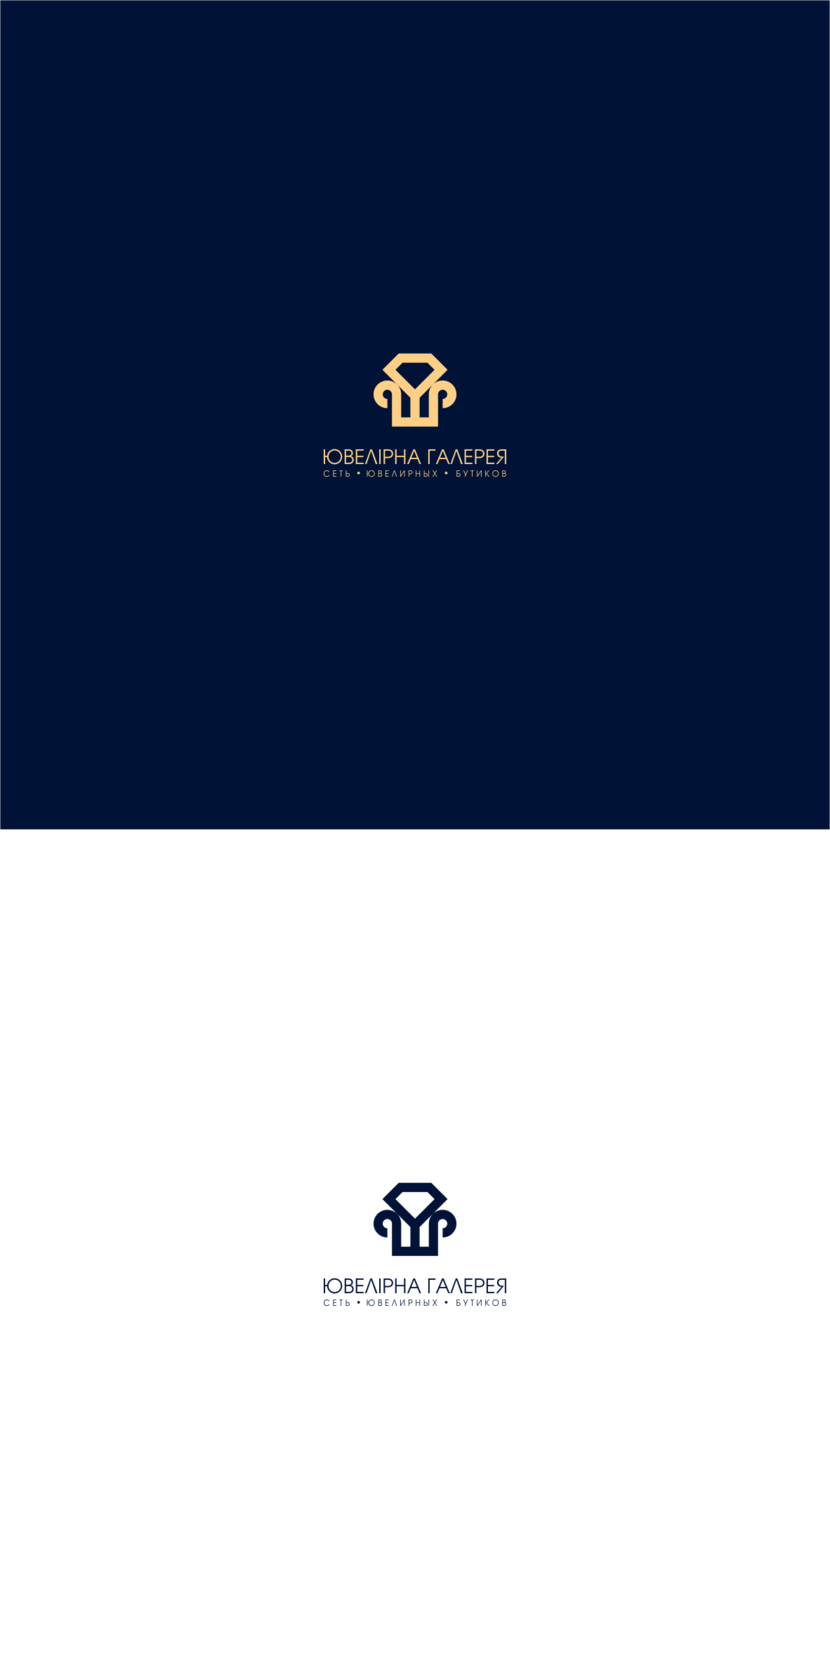 Ювелірна галерея - Логотип для сети ювелирных бутиков «Ювелирная галерея»